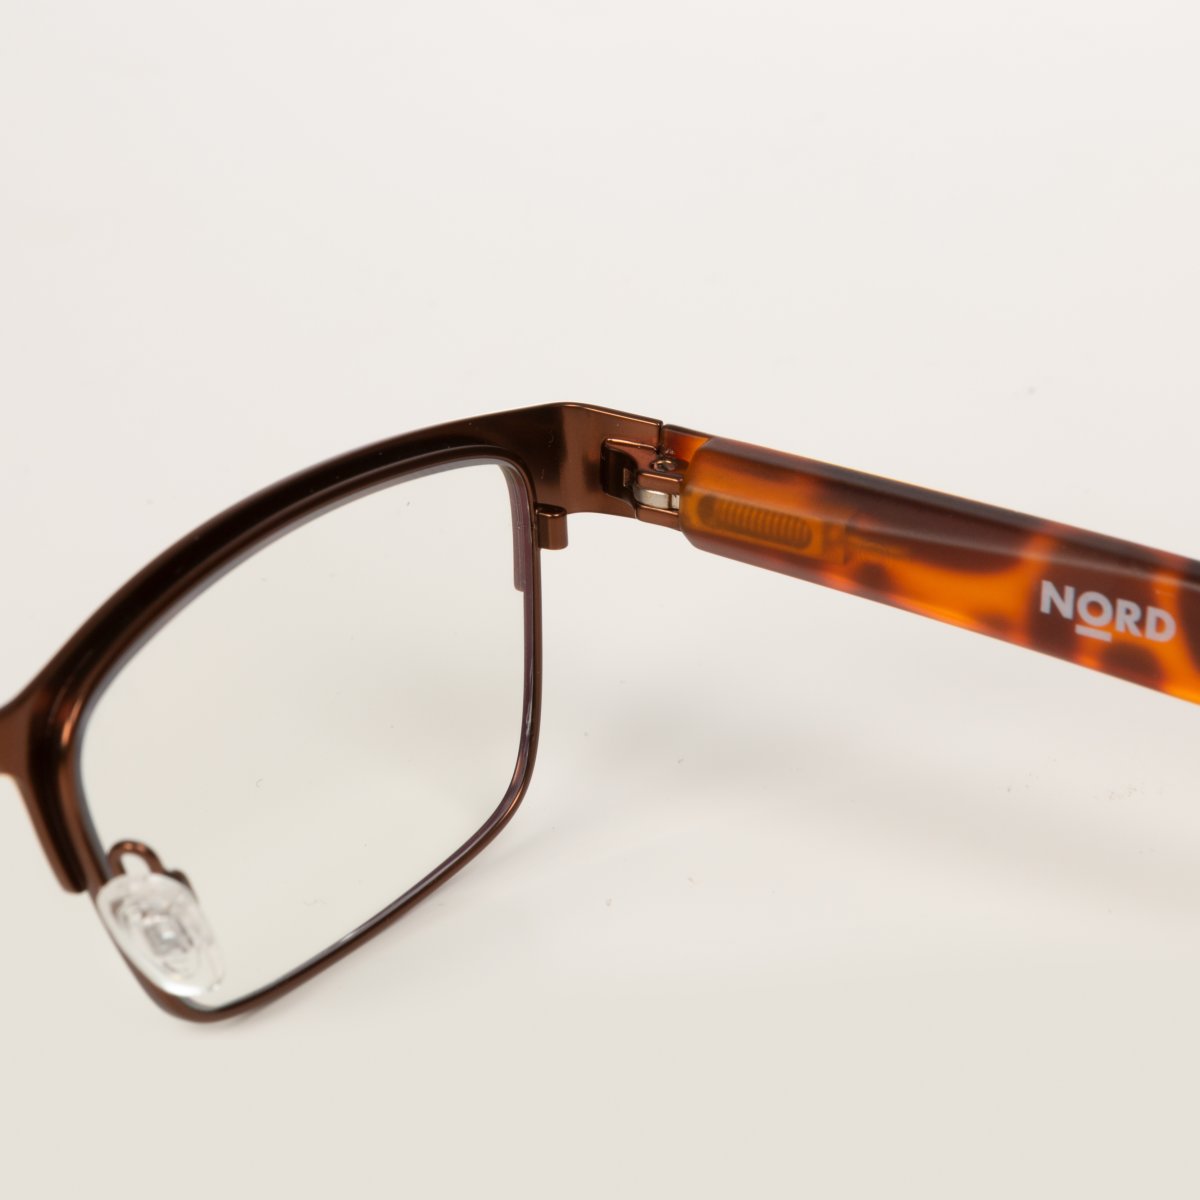 NORD Birk läs- & skärmglasögon | Utan styrka